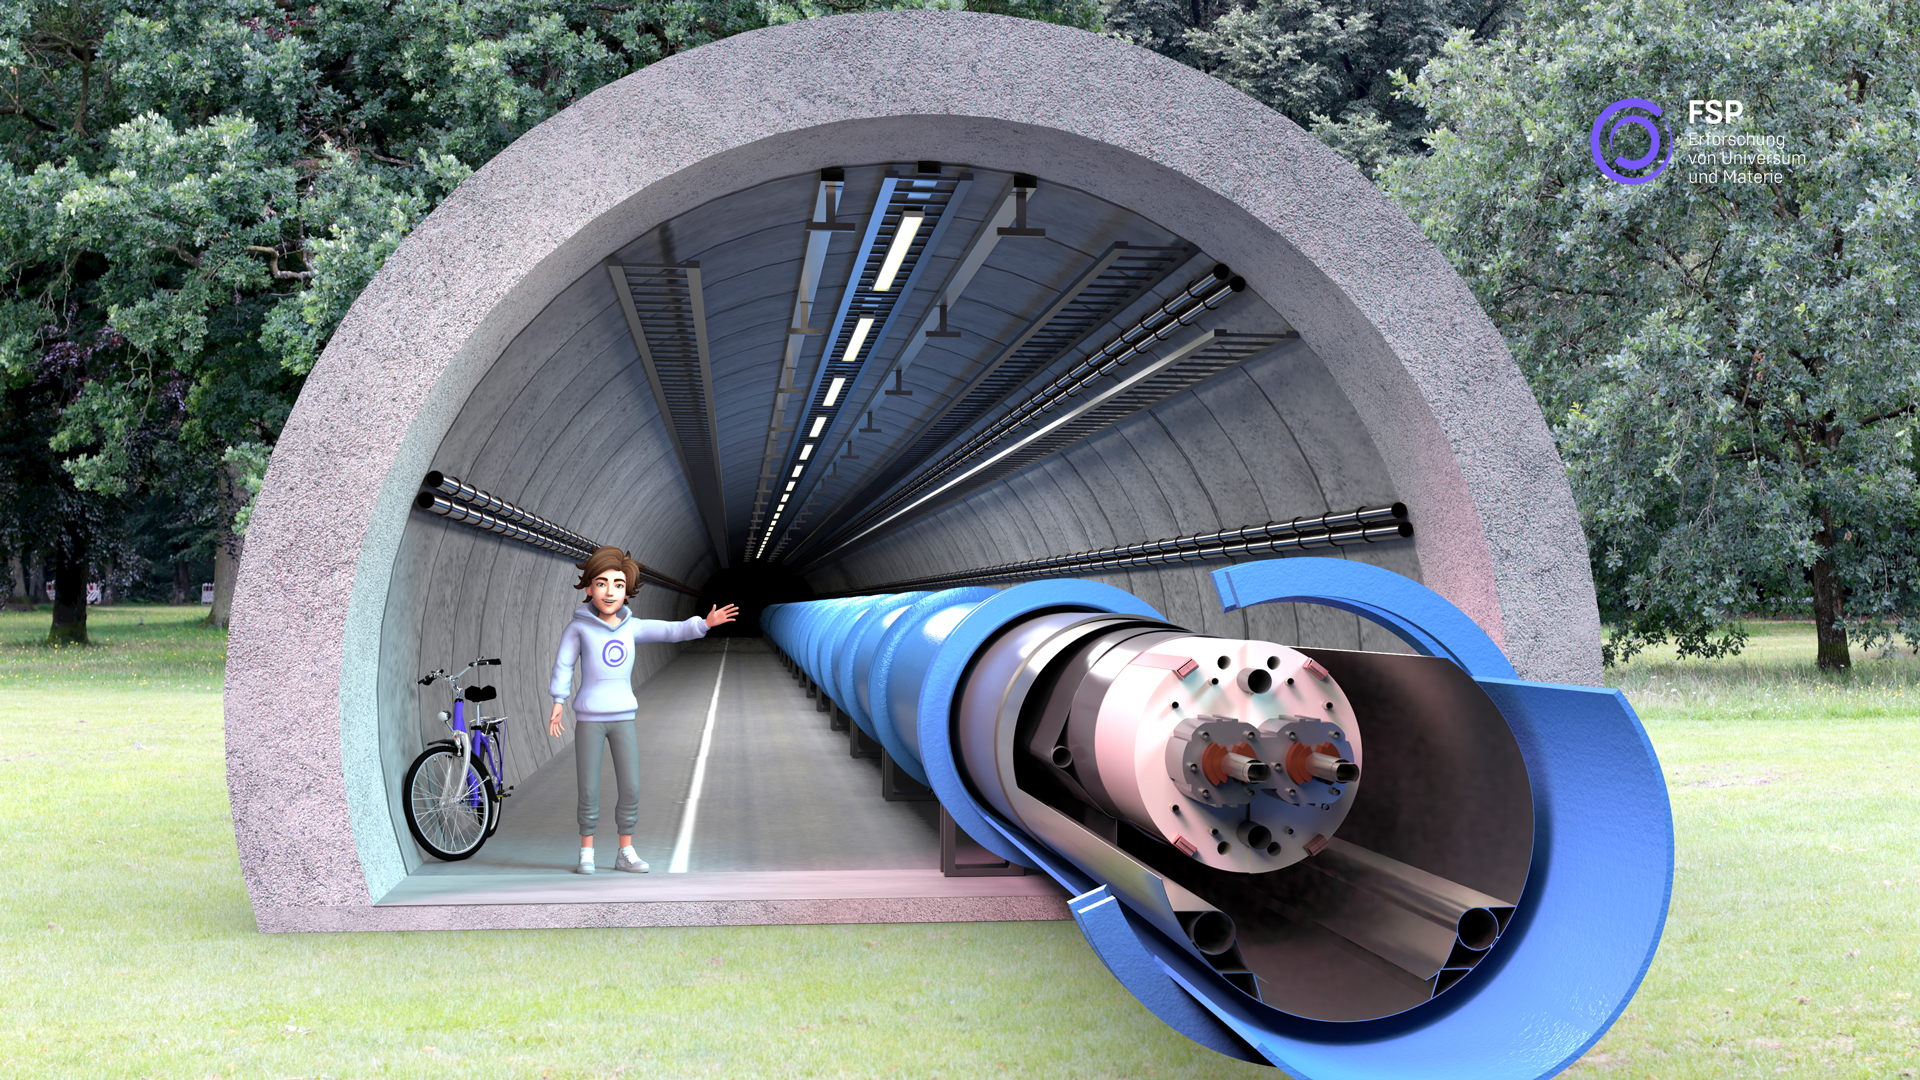 AR Darstellung: eine Person steht neben einem Tunnel auf einer Wiese